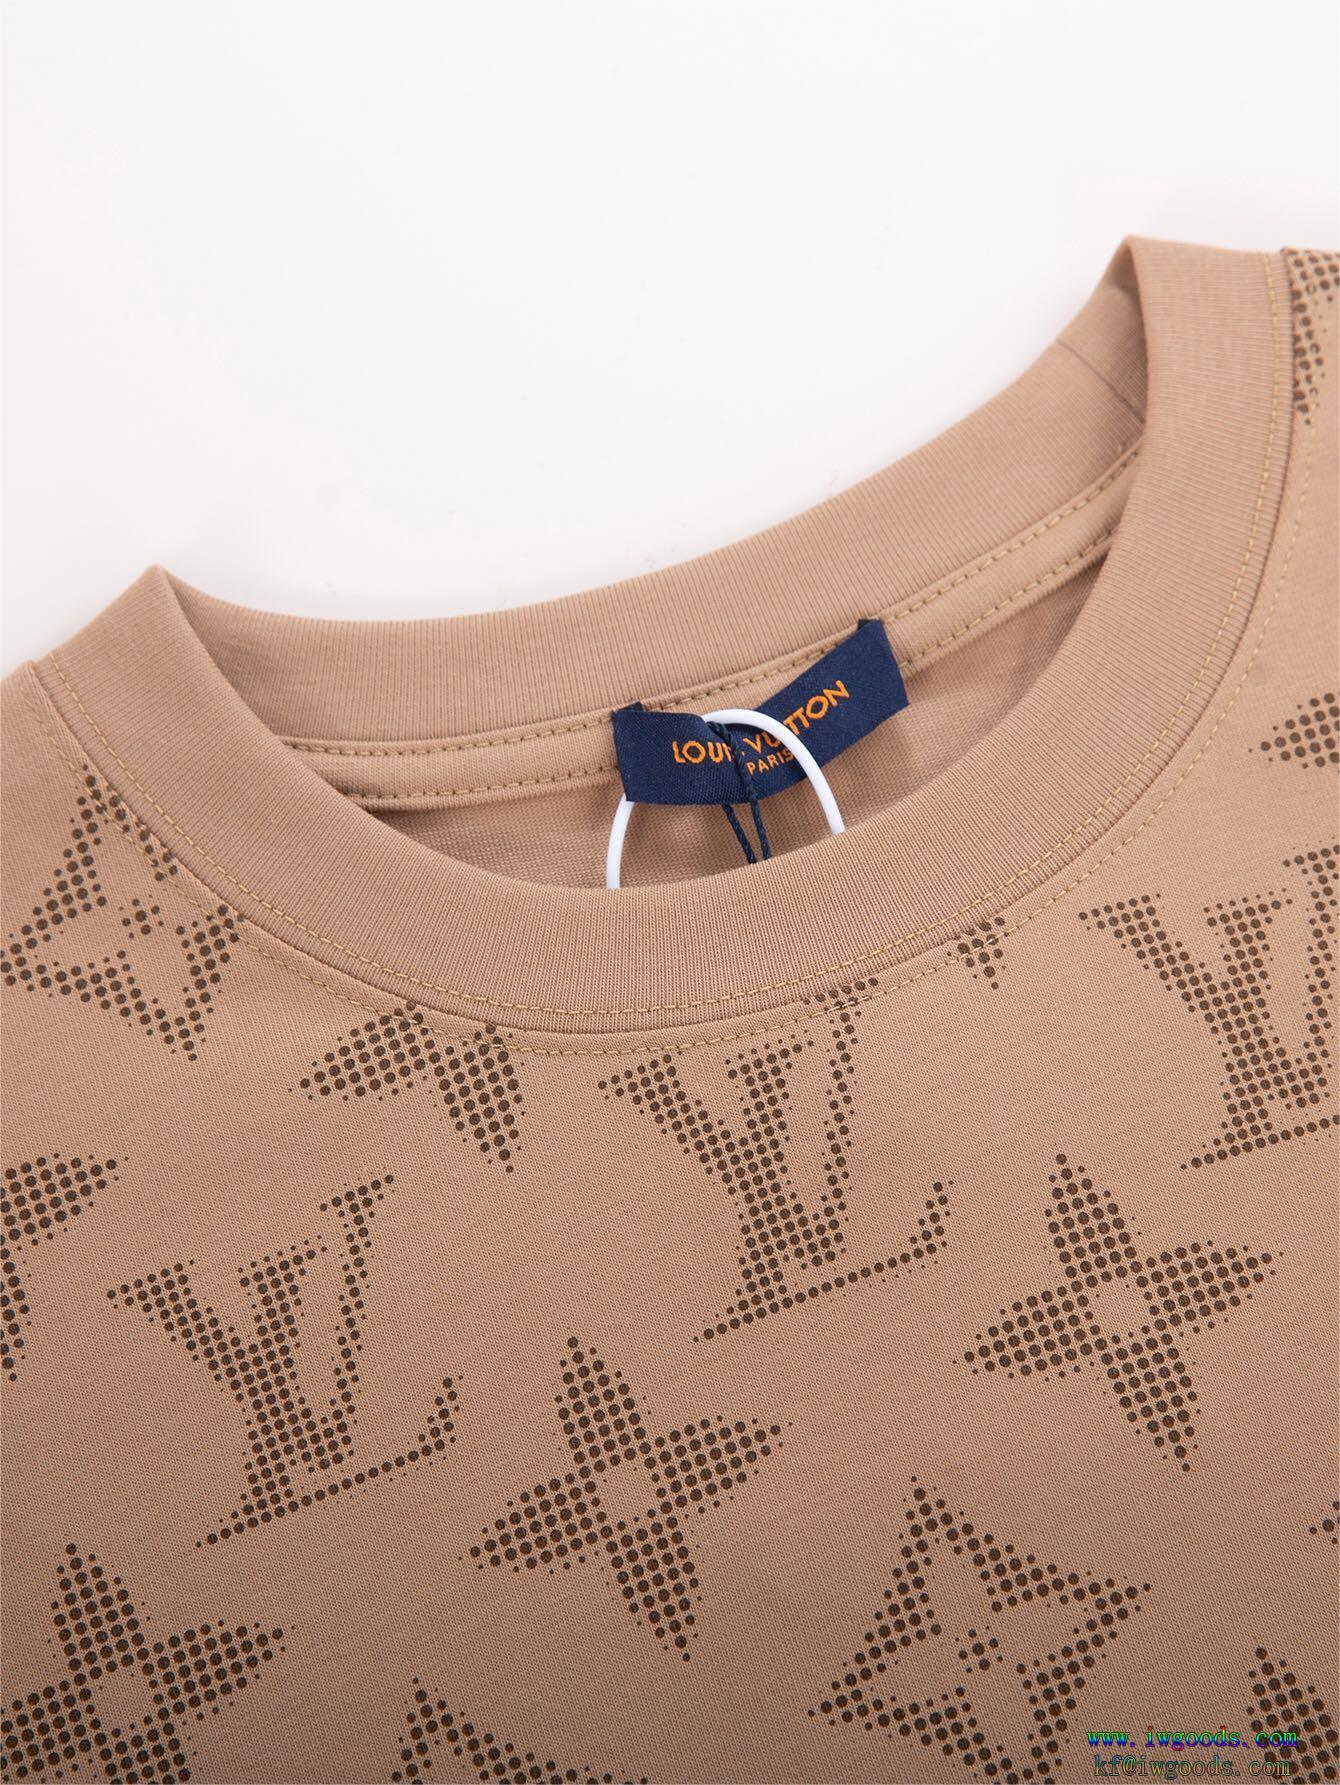 ルイヴィトンLOUIS VUITTONコピー ブランド 通販半袖tシャツ【ユニセックス】一気にトレンド感満載な着こなし通年使えるアイテム